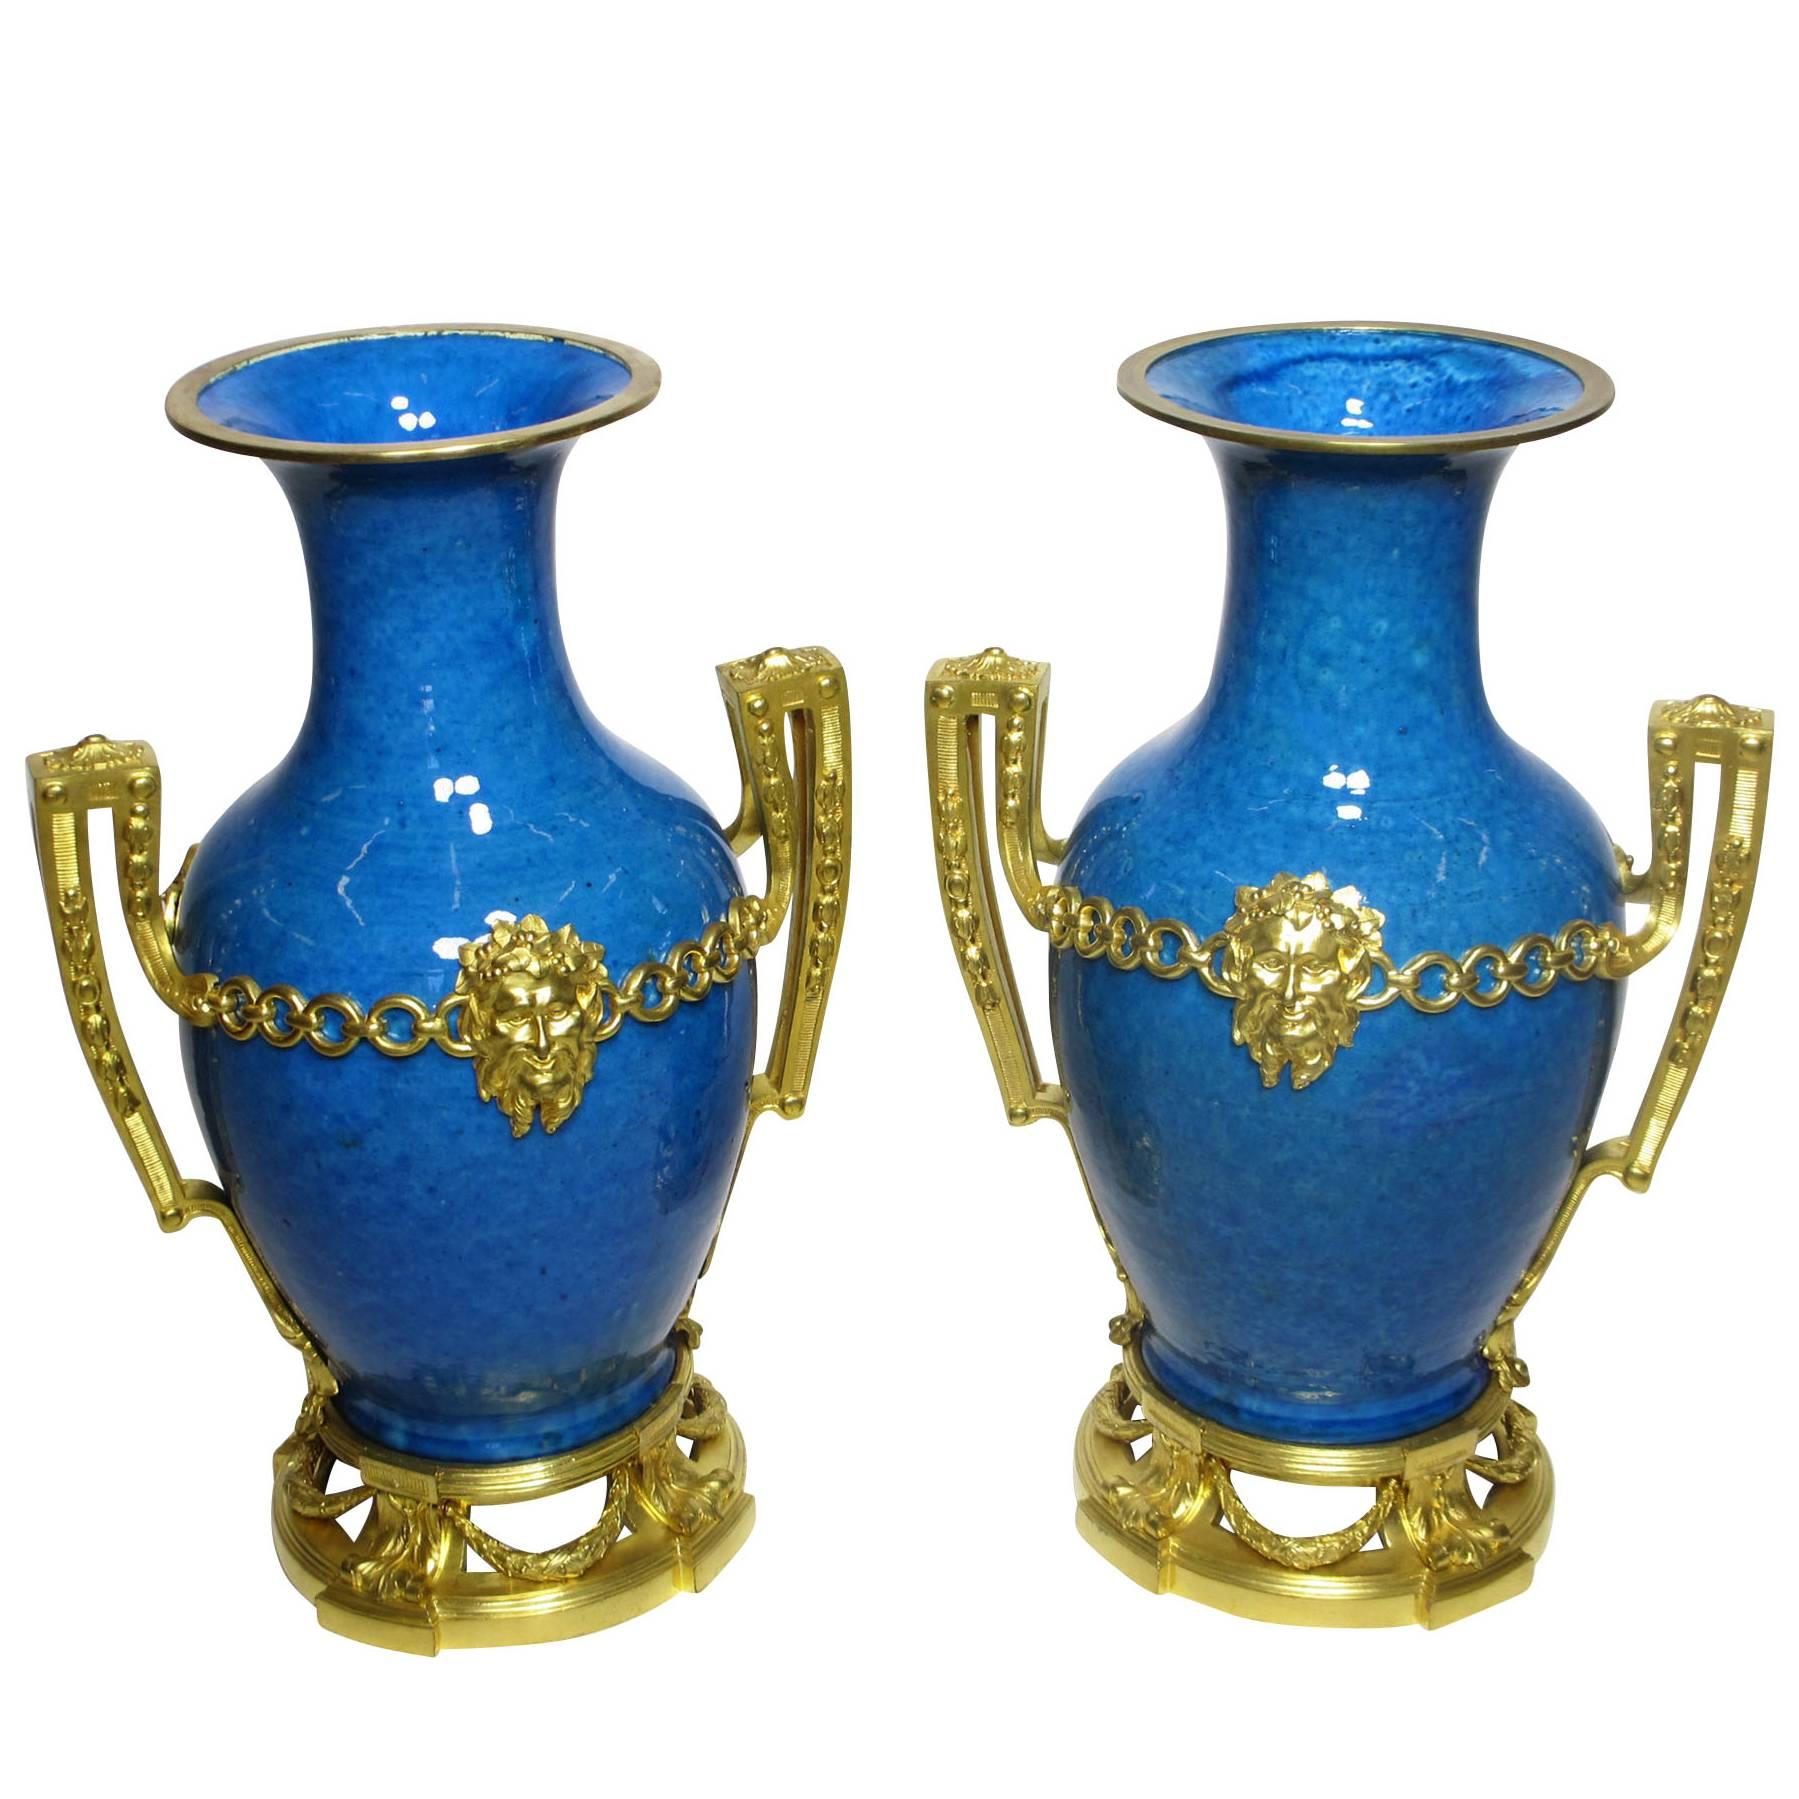 Paire de vases en porcelaine de style Louis XVI du 19ème siècle français/chinois montés en bronze doré